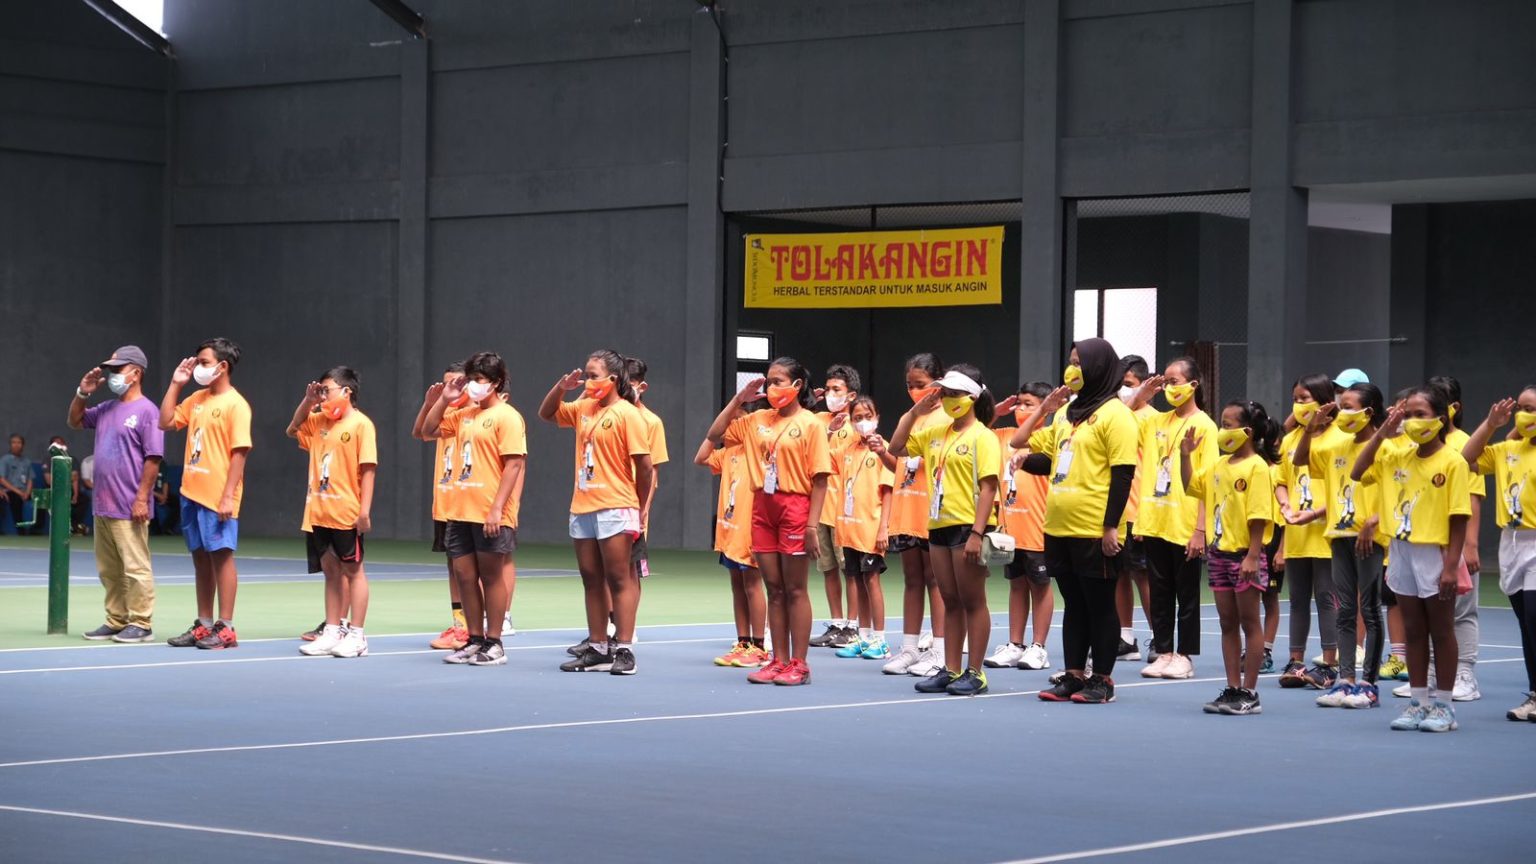 Ratusan Atlet Ikuti Kerjurnas Tenis Piala Wali Kota Magelang 2021